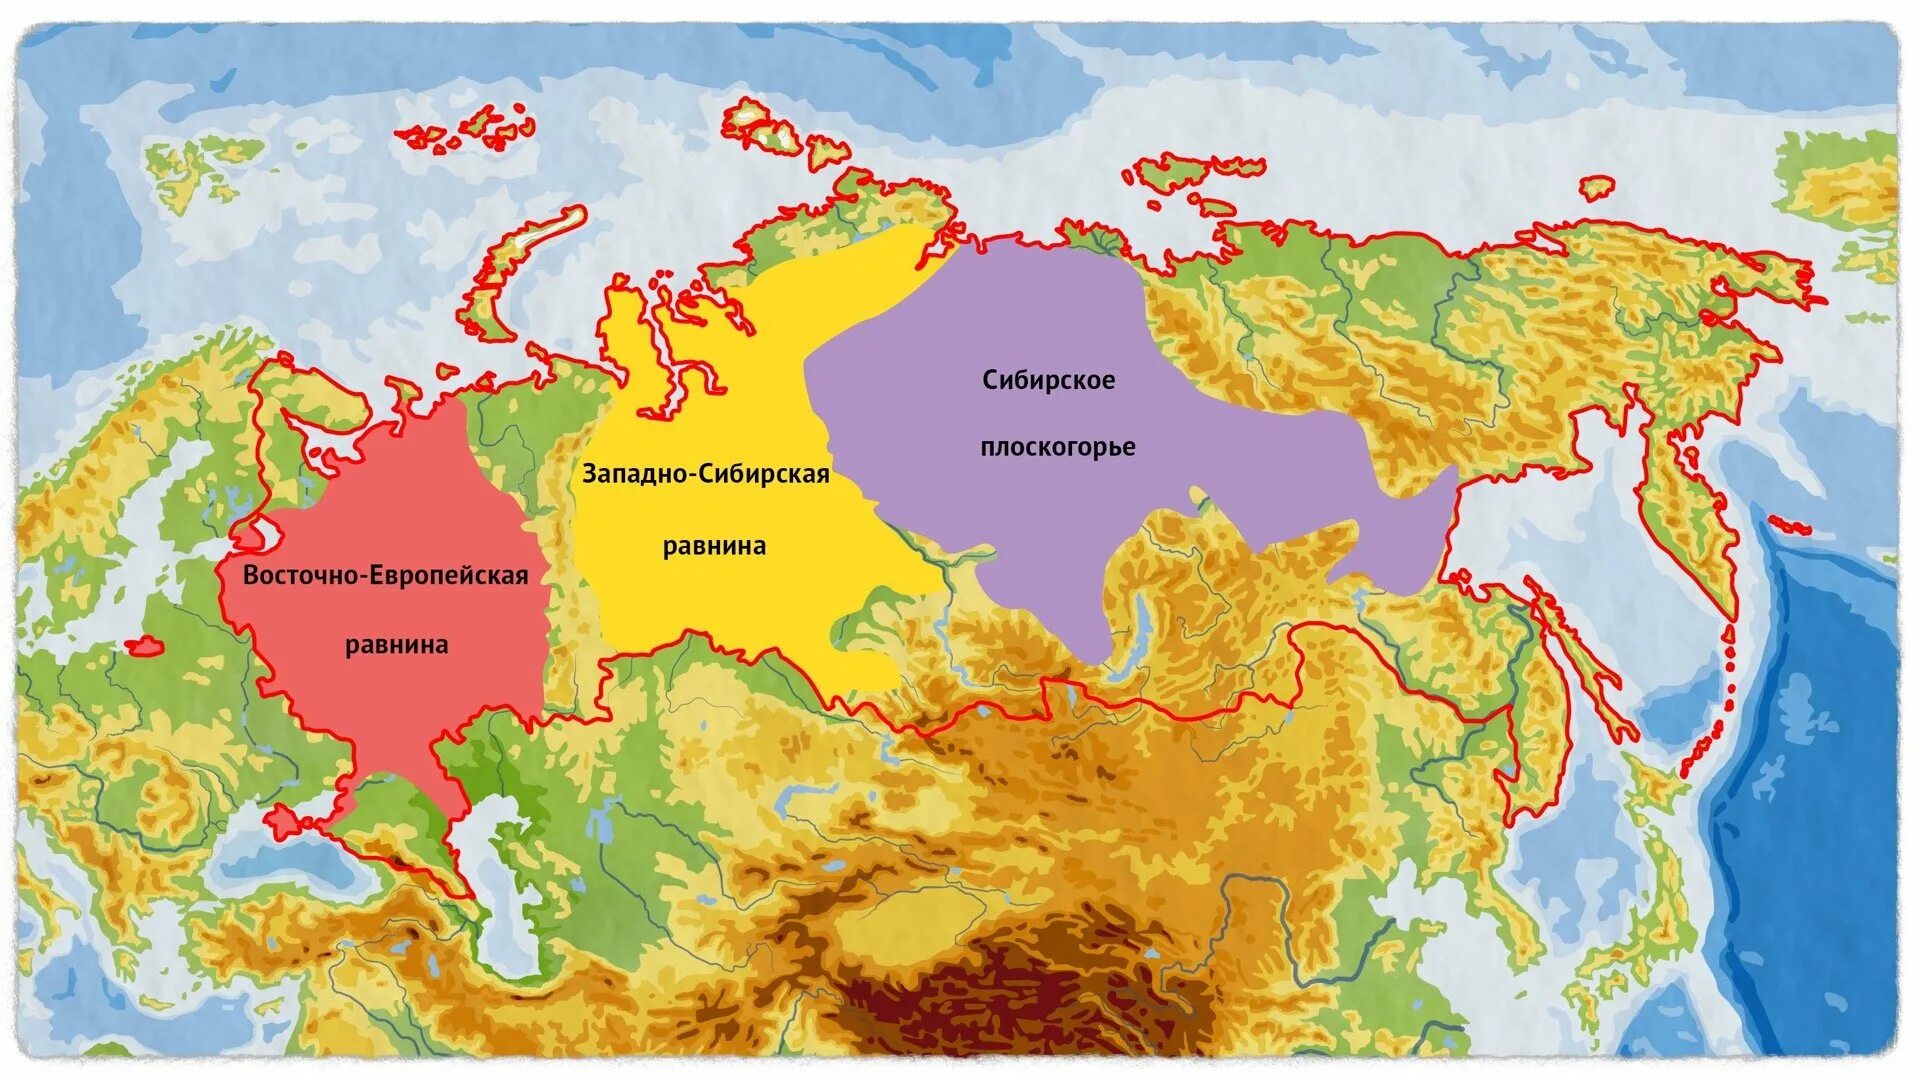 Восточной-европейская ра Внина карта Евразии. Восточно европейская низменность на карте Европы. Восточно-европейская низменность на карте России. Восточно-европейская равнина на карте Европы.